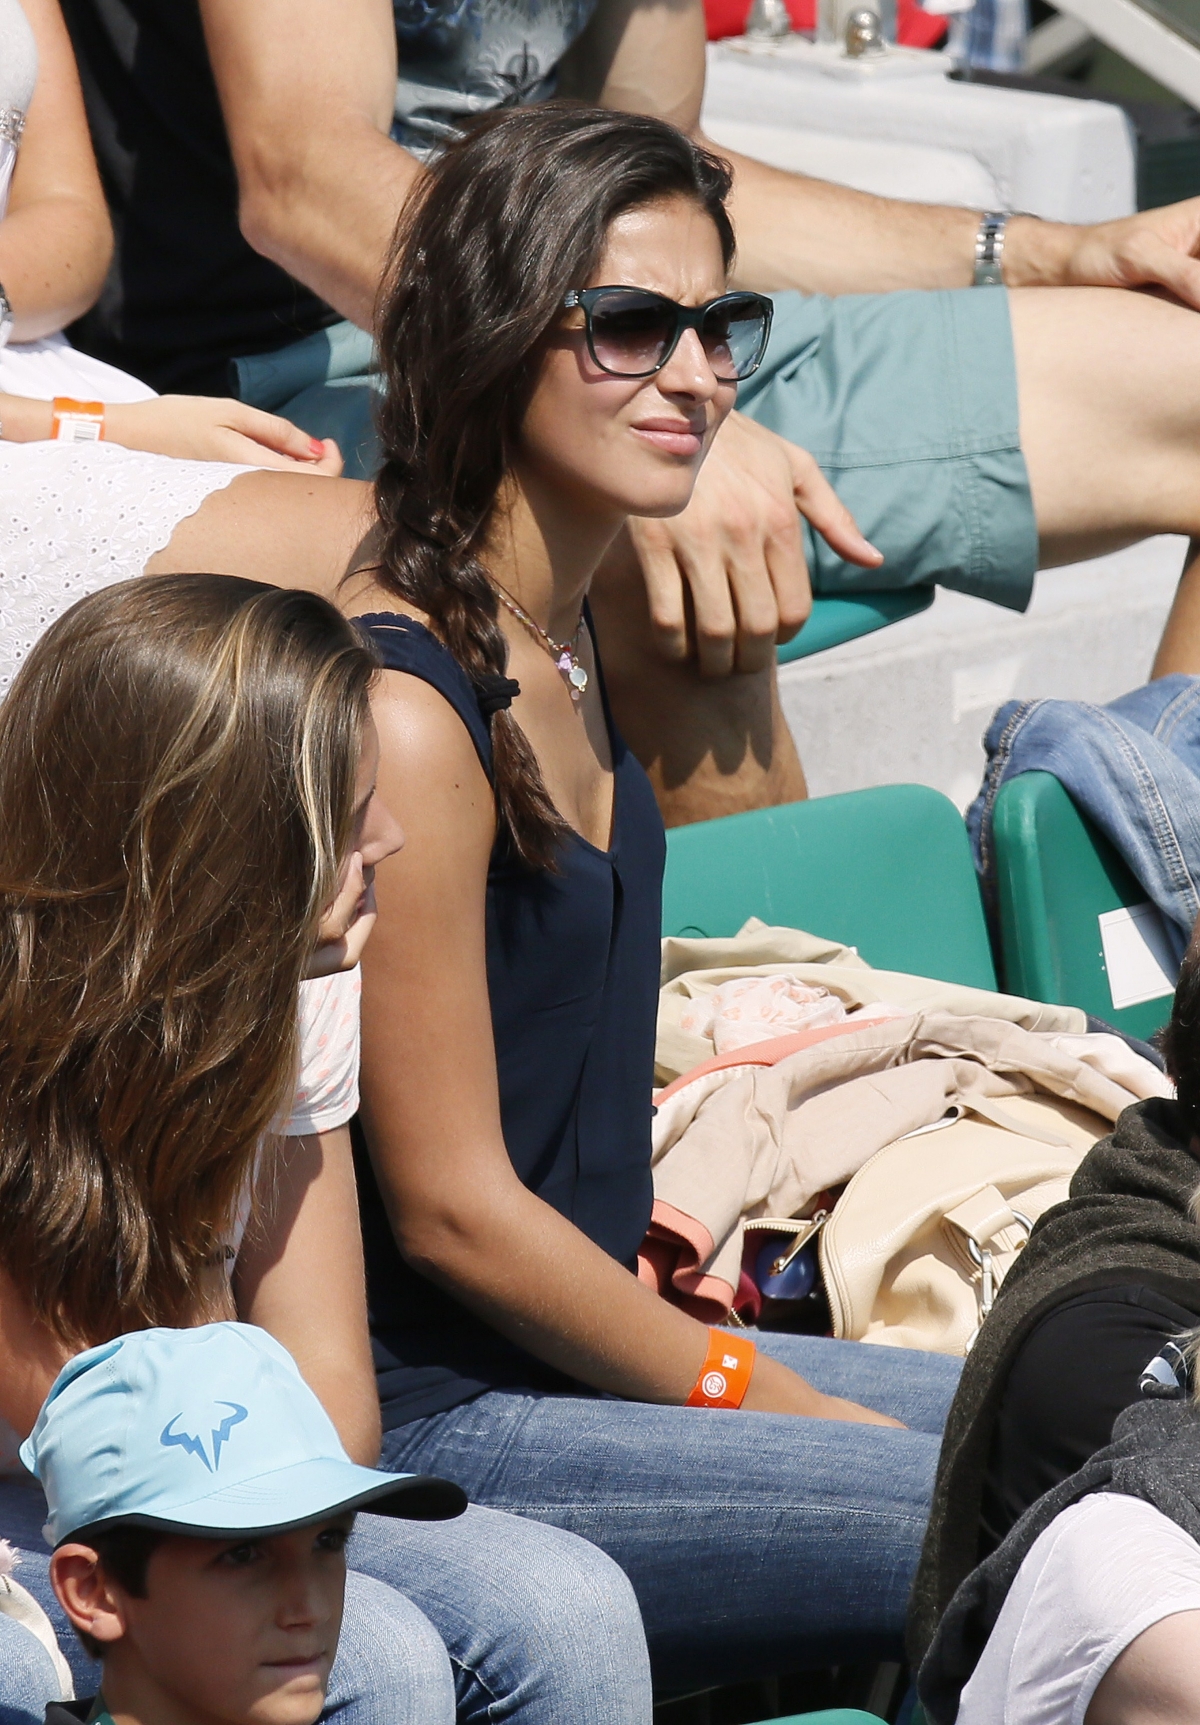 Djokovic and Nadal Girlfriends Jelena Ristic and 'Xisca' Perello